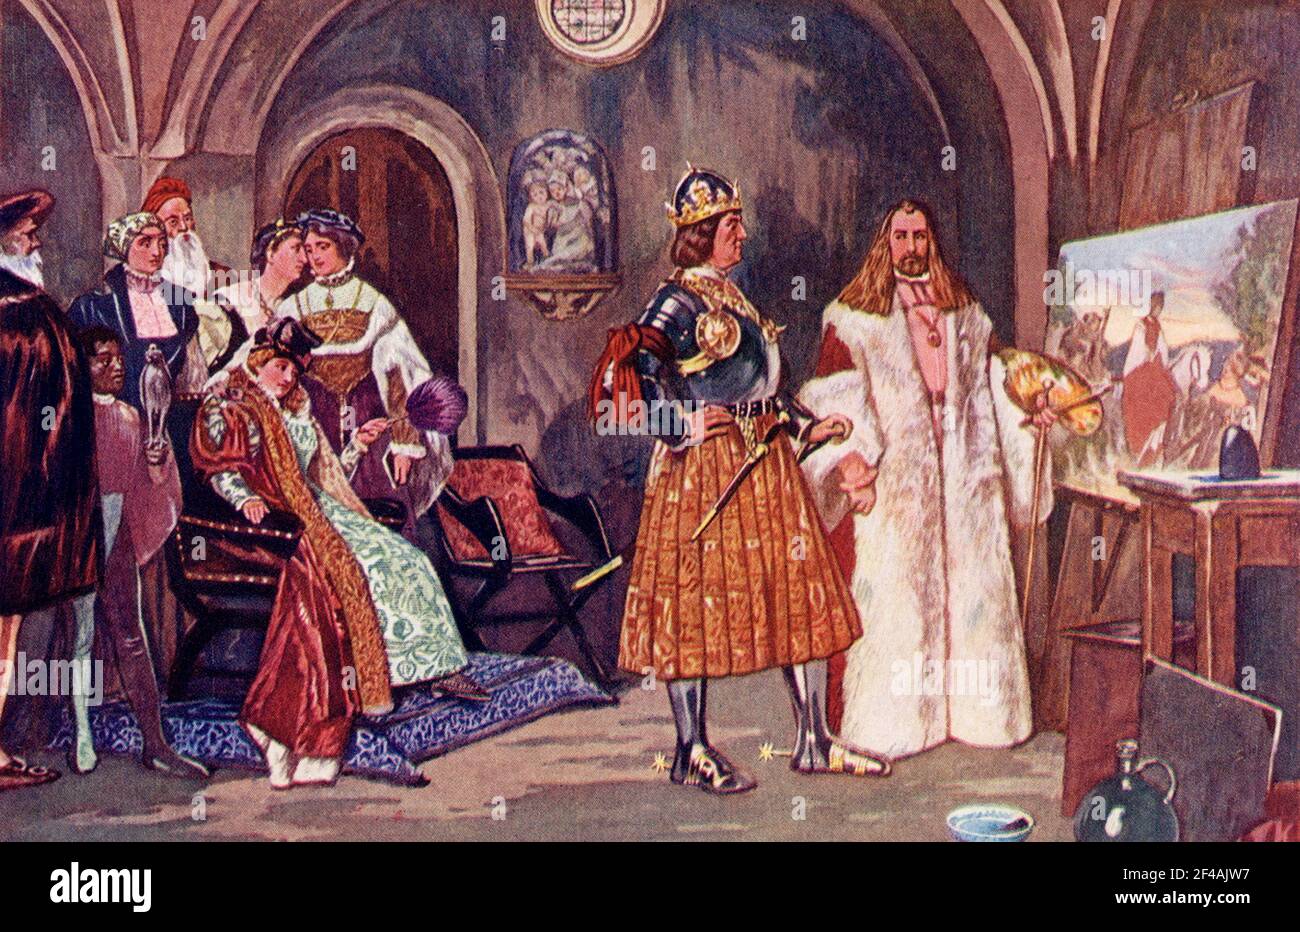 La légende de cette illustration de 1902 se lit comme suit : l'empereur Maximilliam visite le studio d'Albrecht Durer. Durer (1471-1528), le plus célèbre des artistes allemands, était l'un des grands favoris de l'empereur Maximilien, qui l'employait sur une série de croquis brillants, célébrés vers 1900 comme « le triomphe de Maximilien ». Banque D'Images